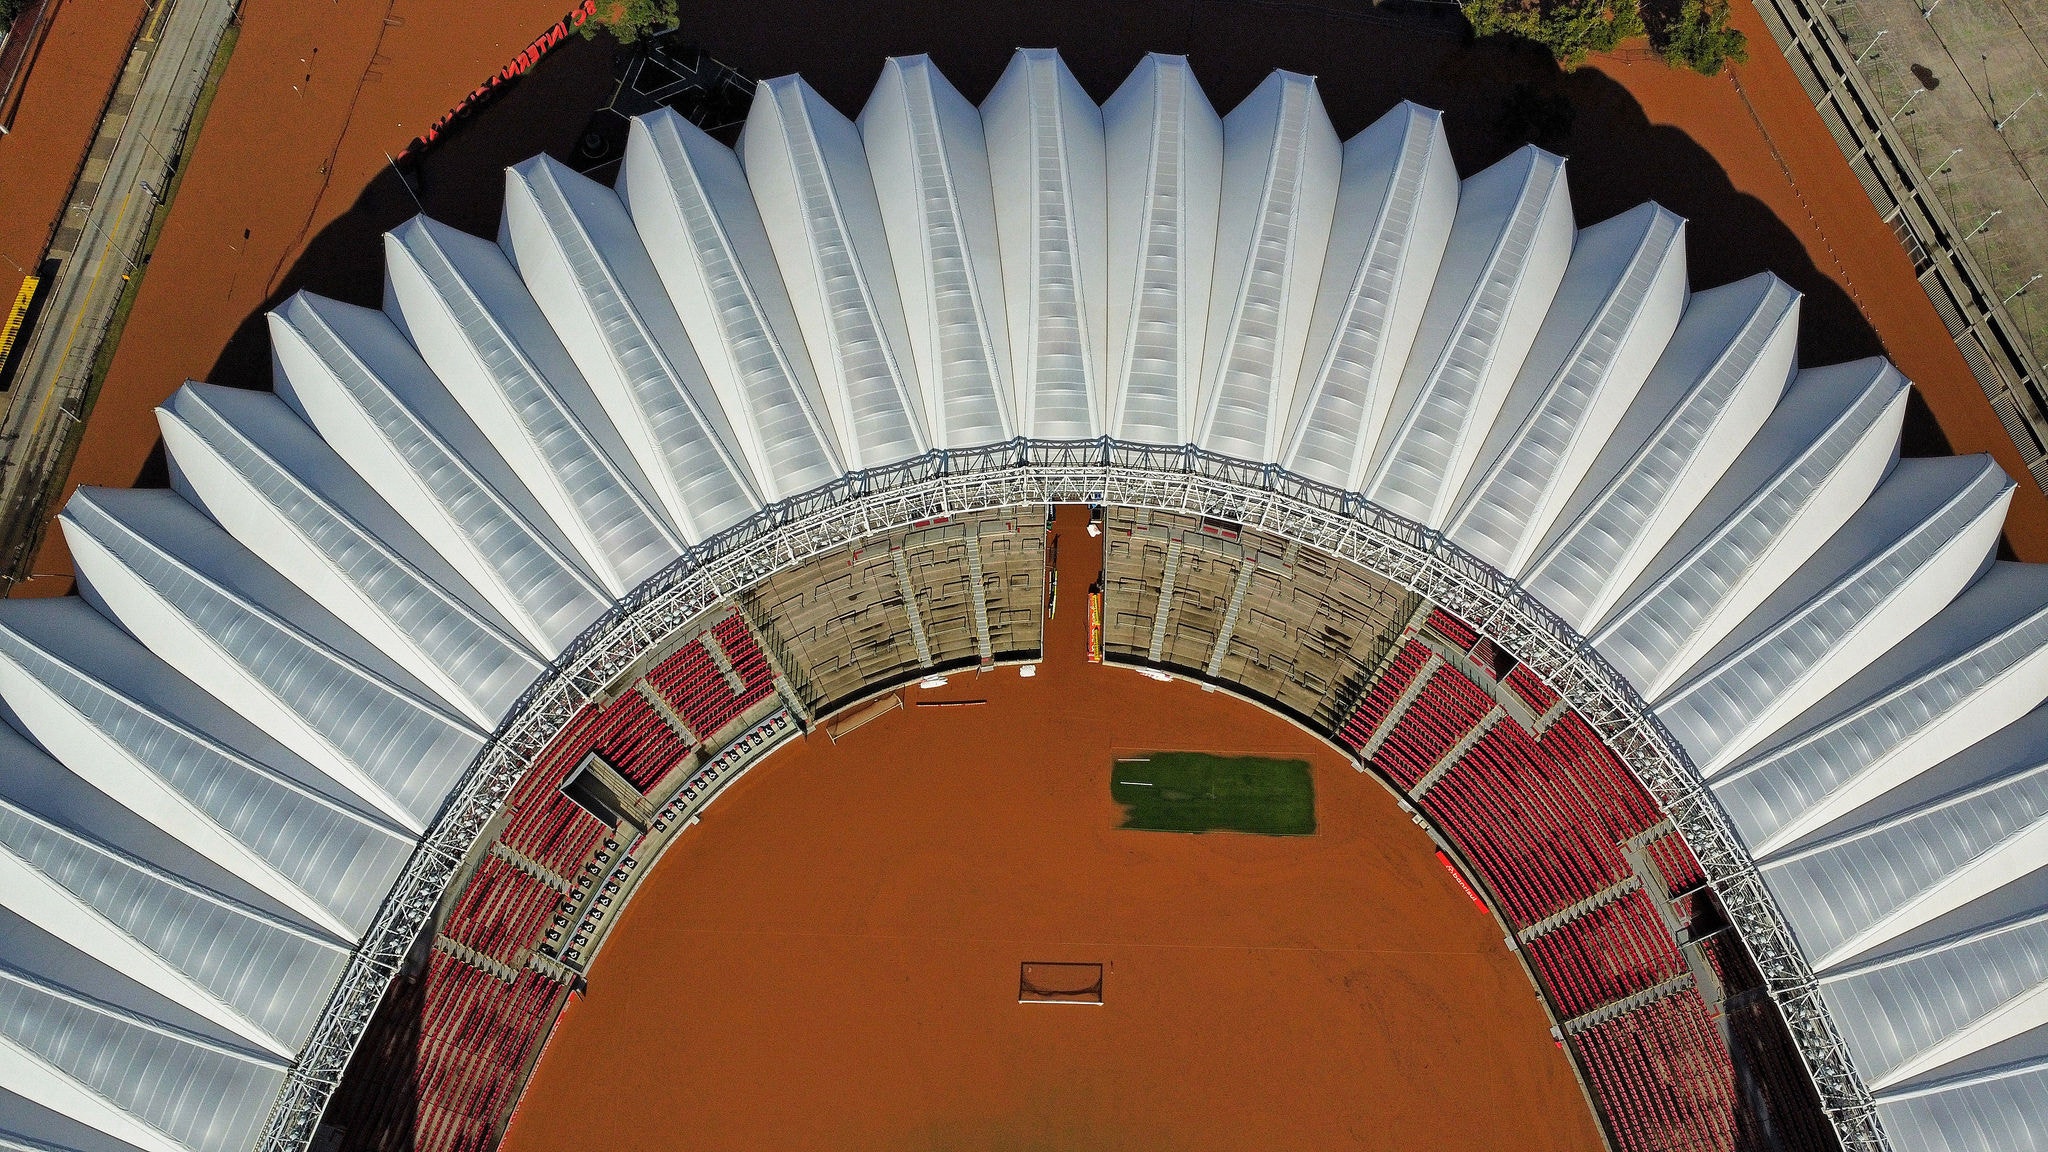 Vista aérea do Estádio Beira-Rio após as enchentes